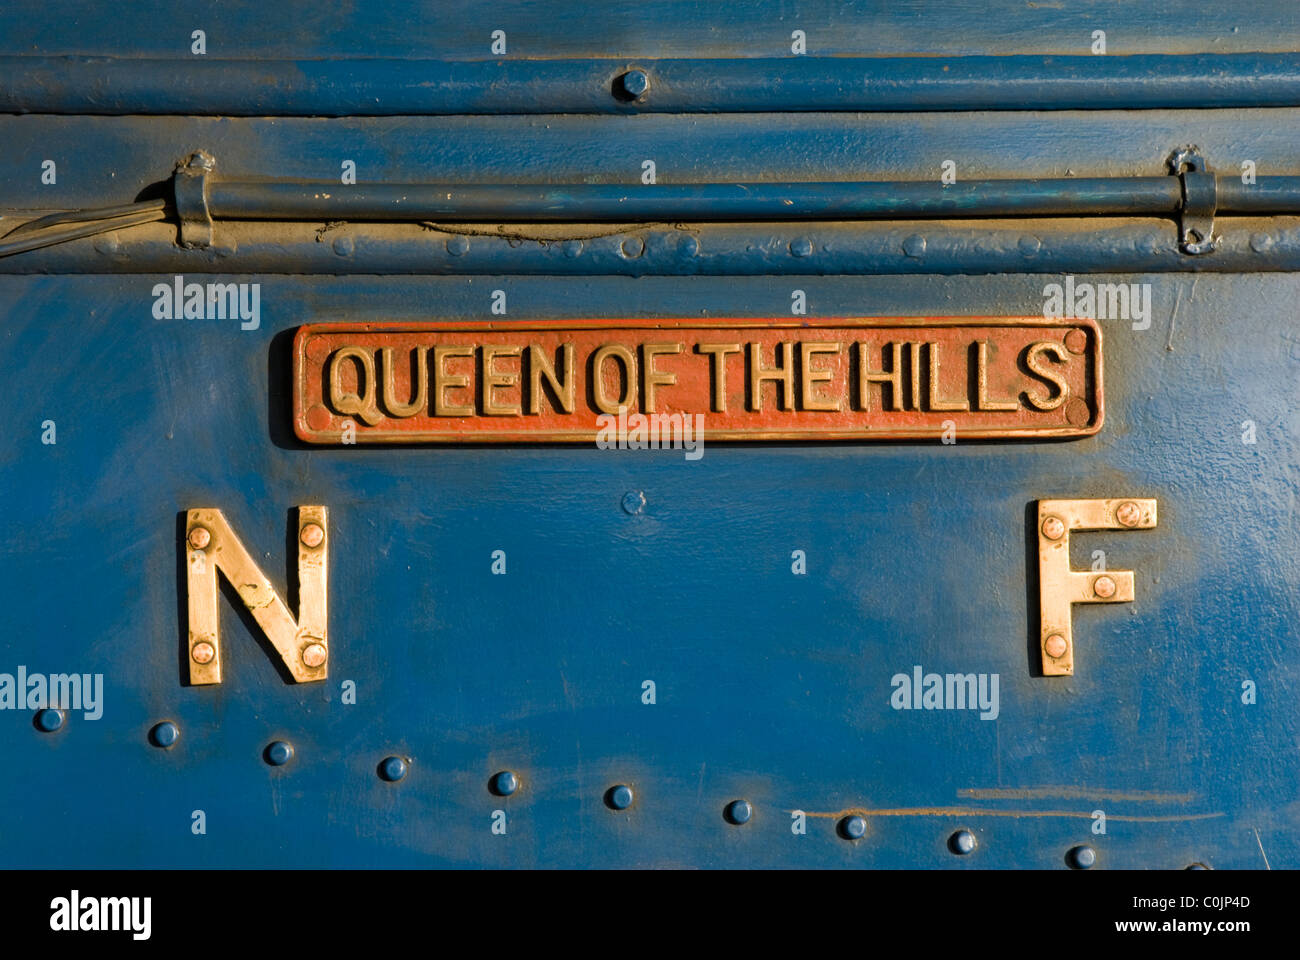 Queen of the Hills Engine, The Darjeeling Himalayan Railway, Darjeeling, West Bengal, India. Stock Photo